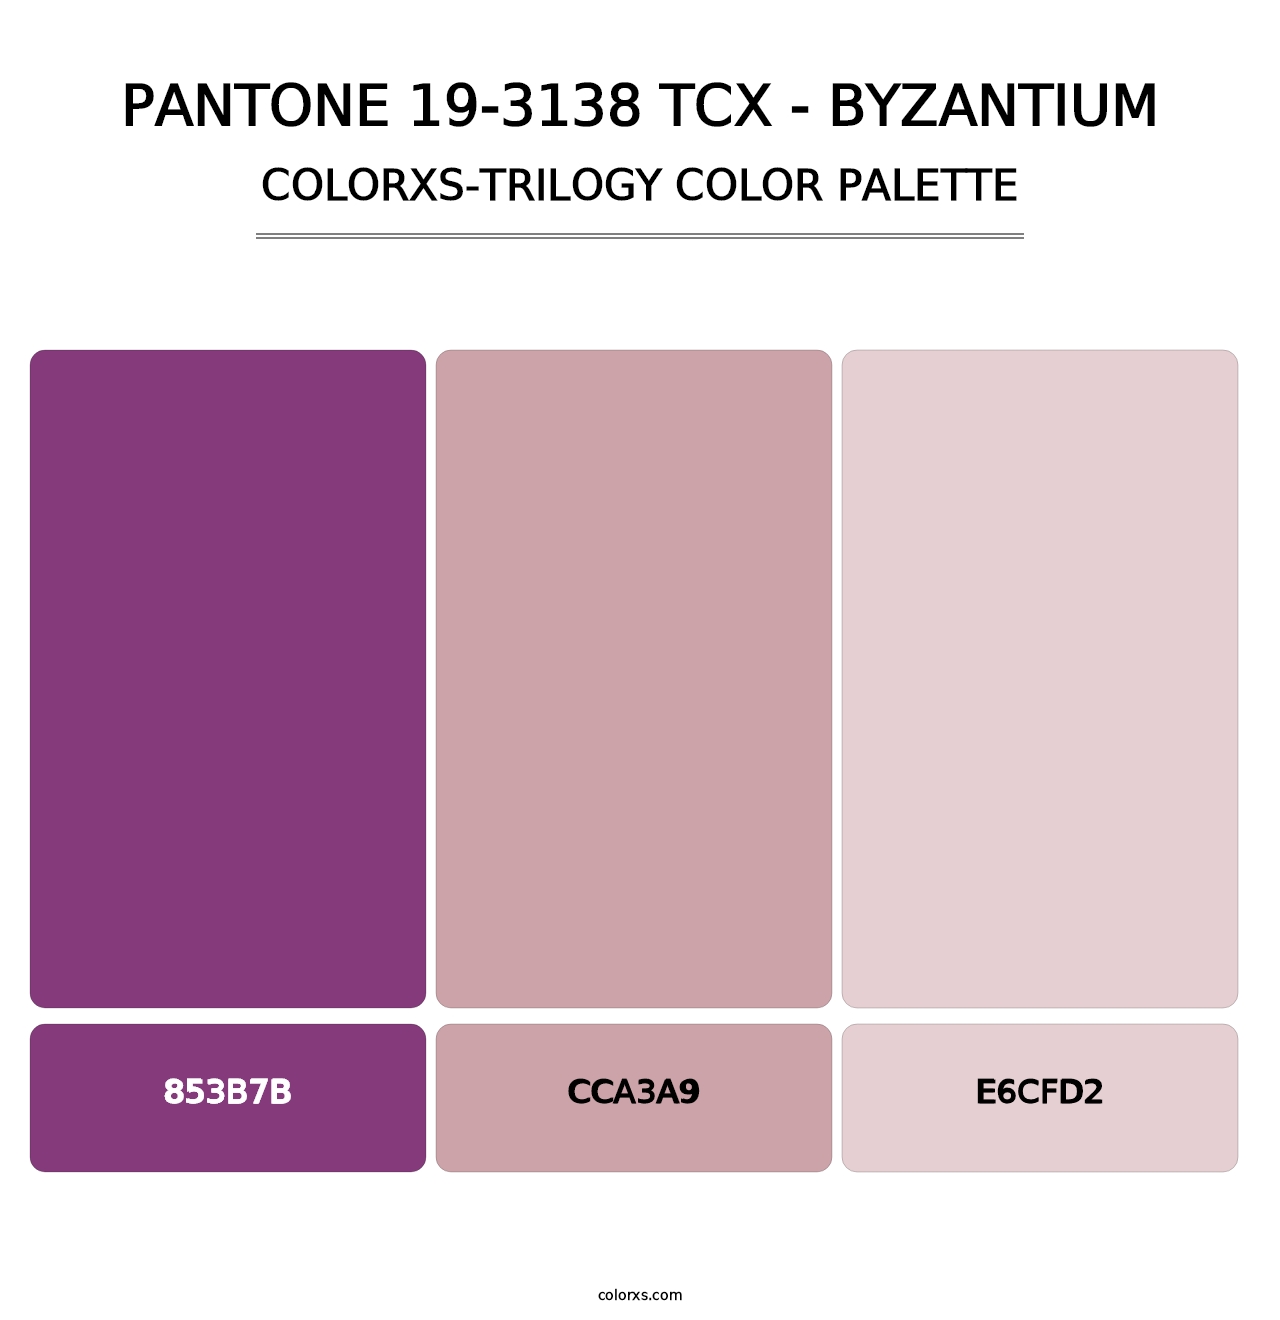 PANTONE 19-3138 TCX - Byzantium - Colorxs Trilogy Palette